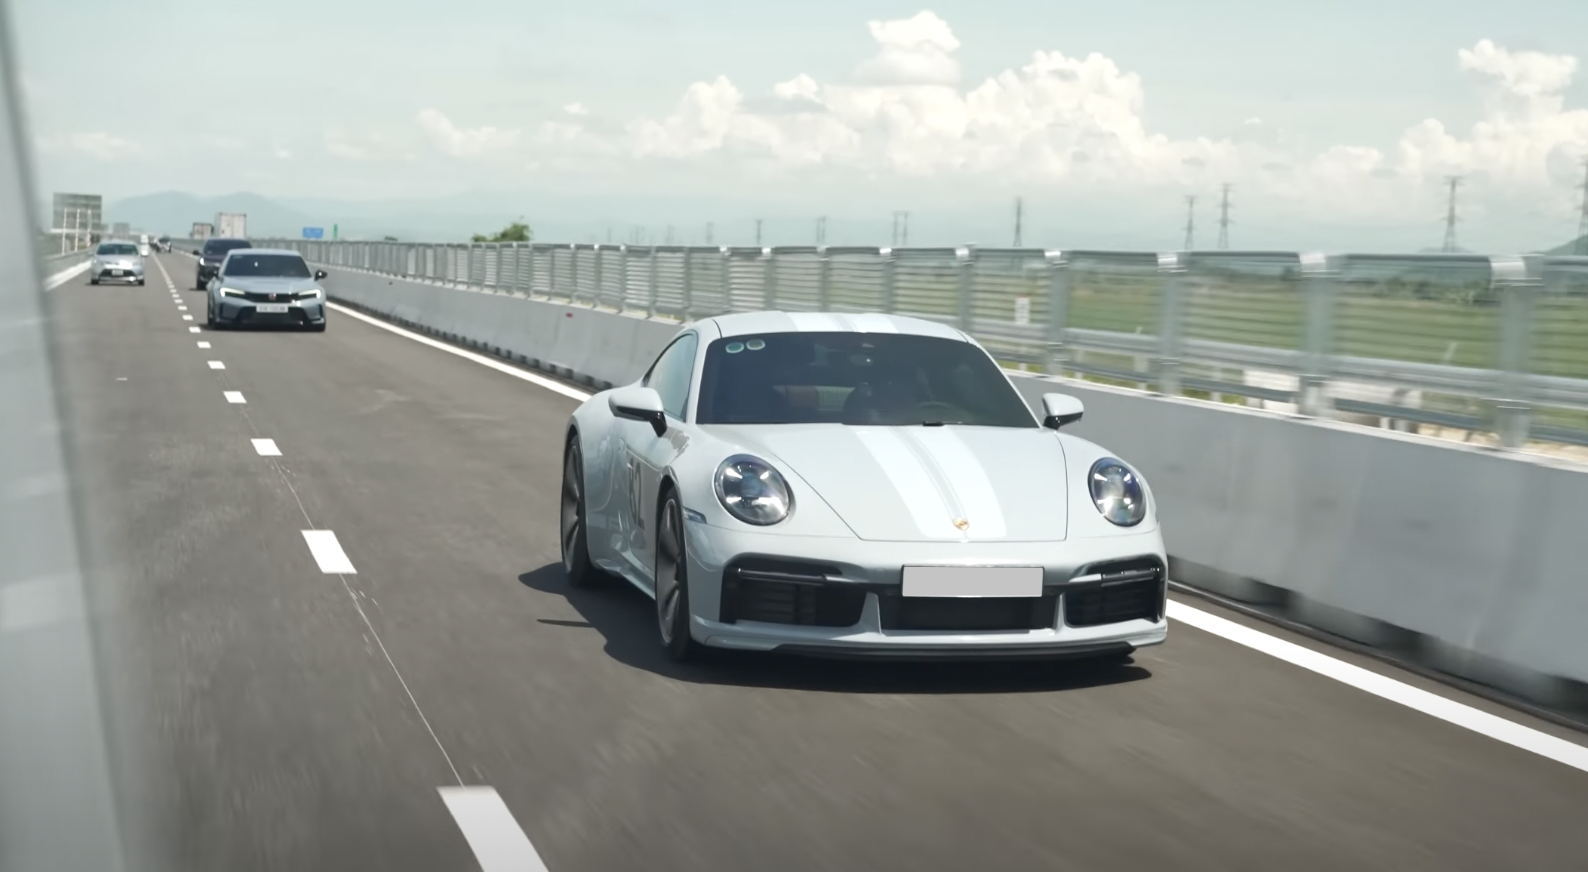 Cường Đô La ‘review’ Porsche 911 số sàn vừa mua giá hơn 19 tỷ đồng: ‘Lái thích, nhưng đi đường dài hơi đuối và ê ẩm chân’ - Ảnh 3.